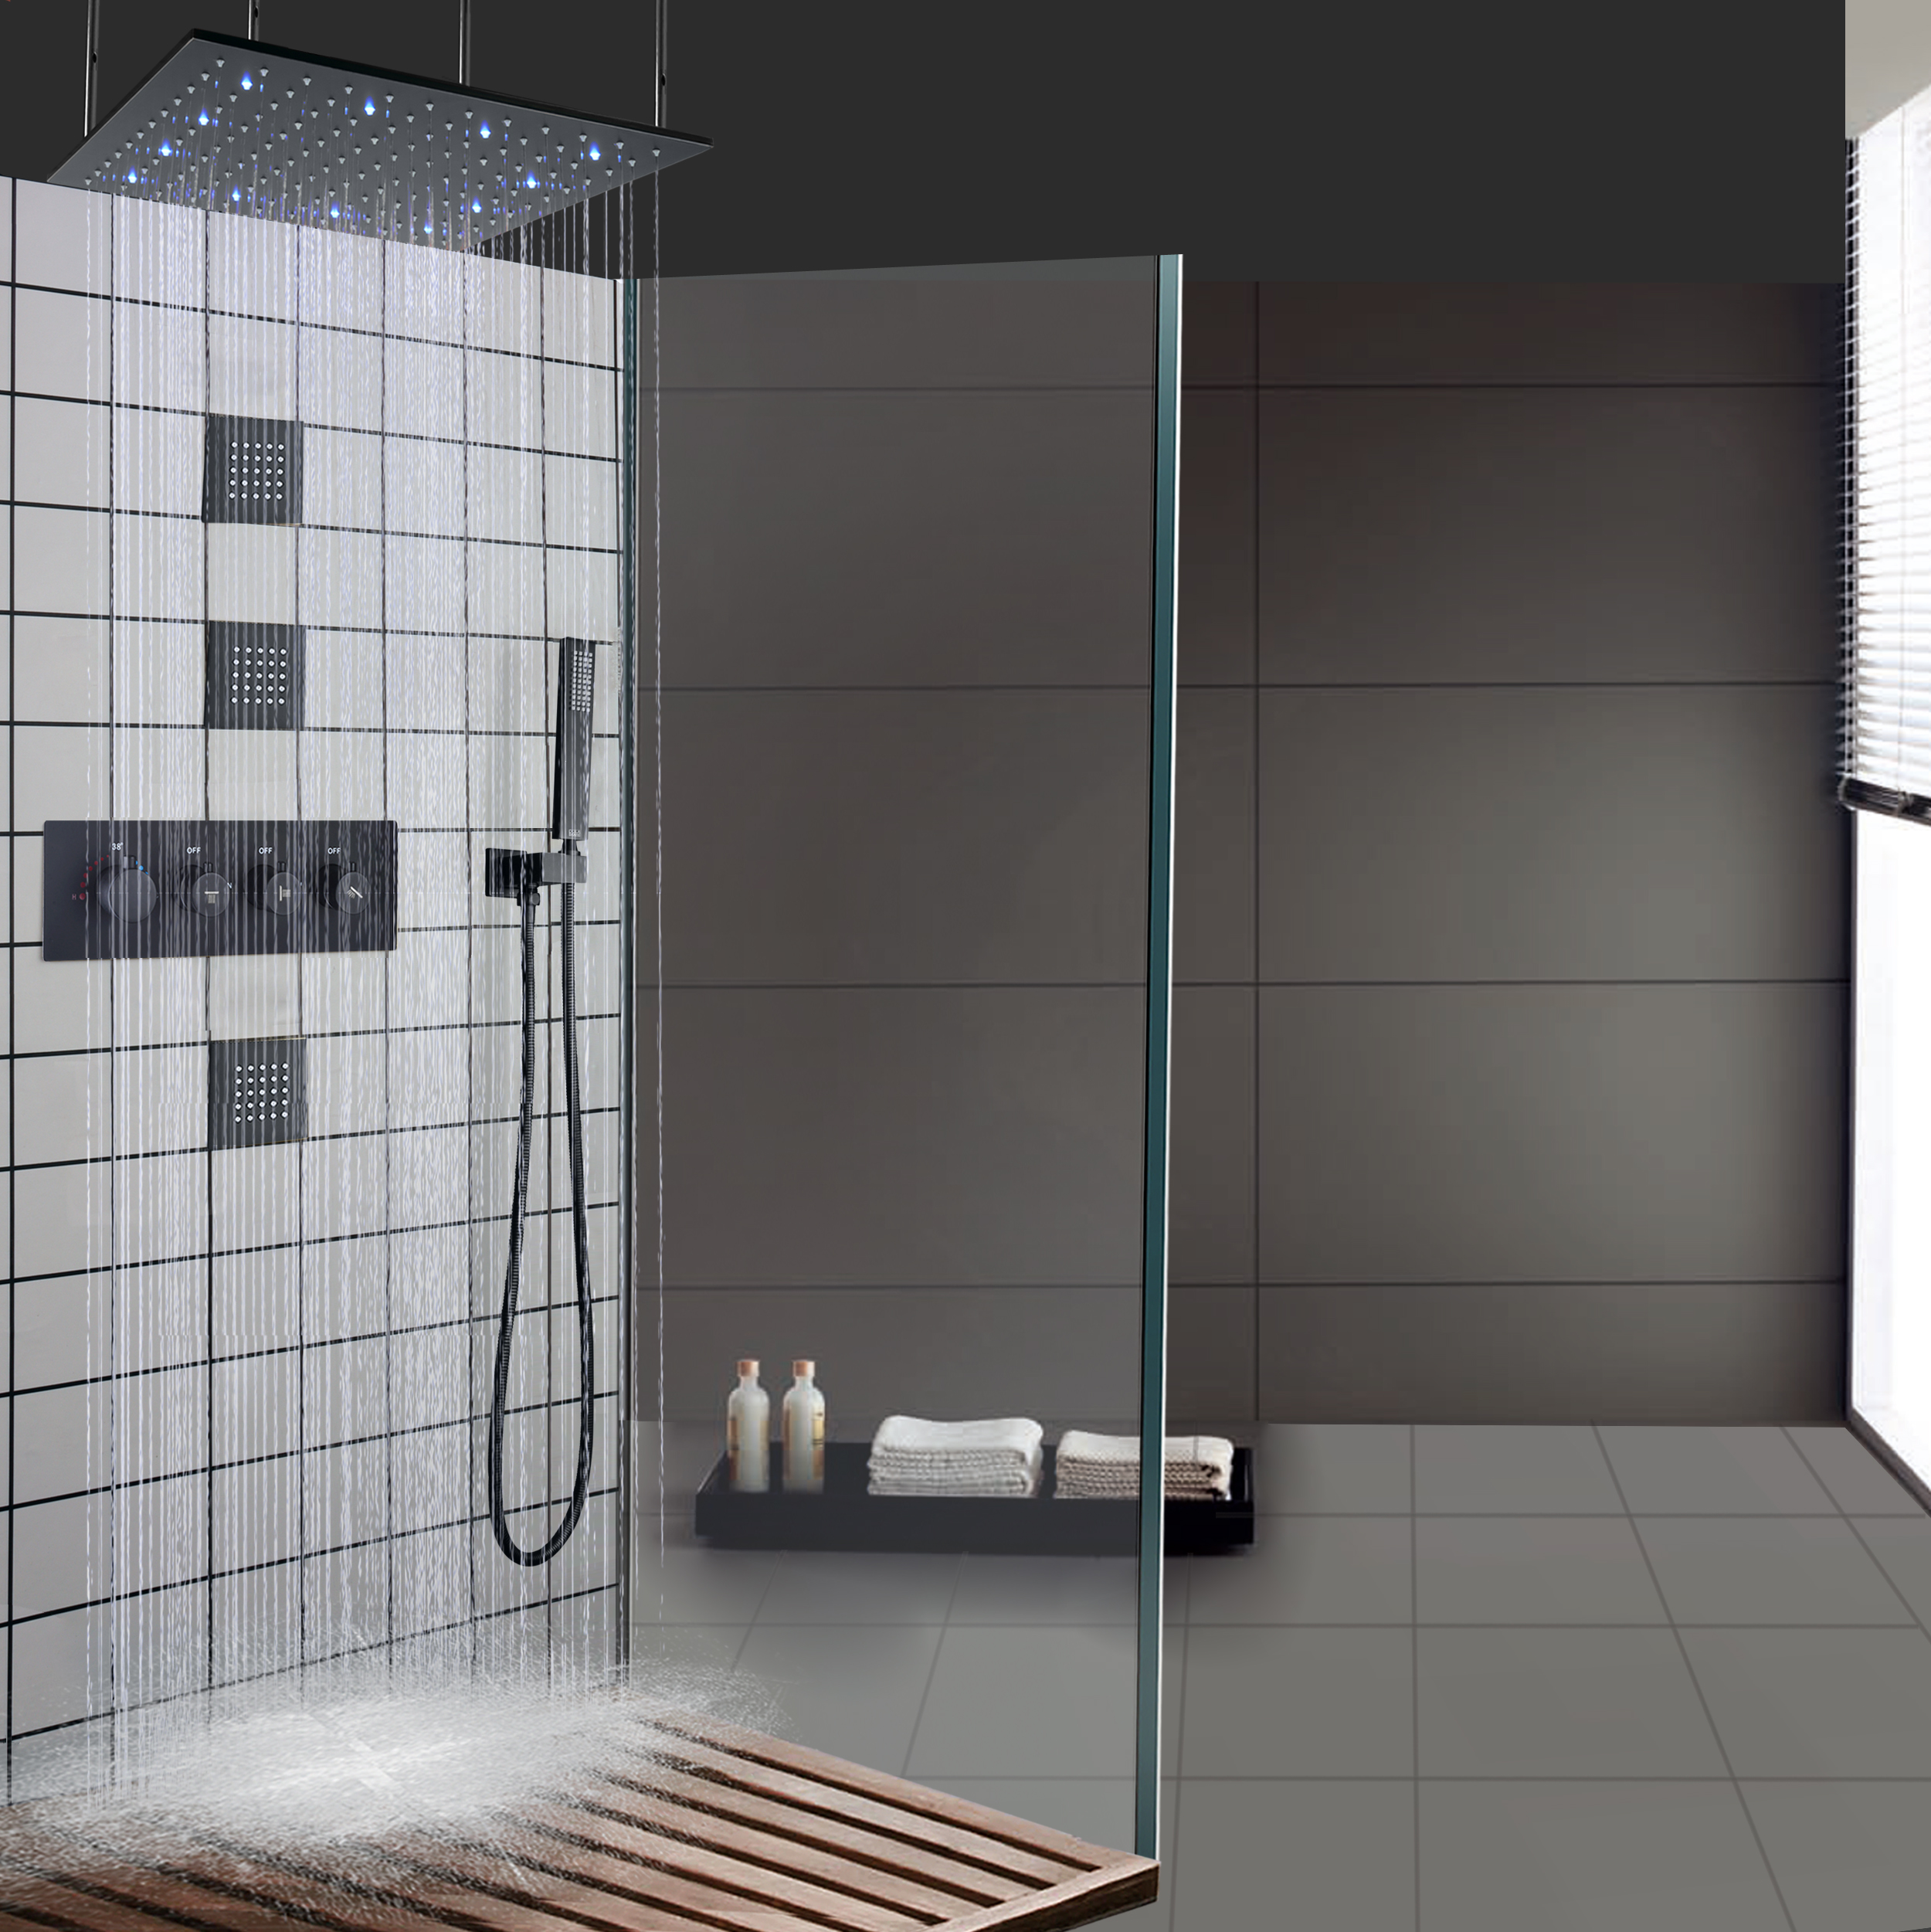 ماتي الأسود LED ثرموستاتي حمام دش الحنفيات سقف الحمام الأمطار تدليك دش مجموعة